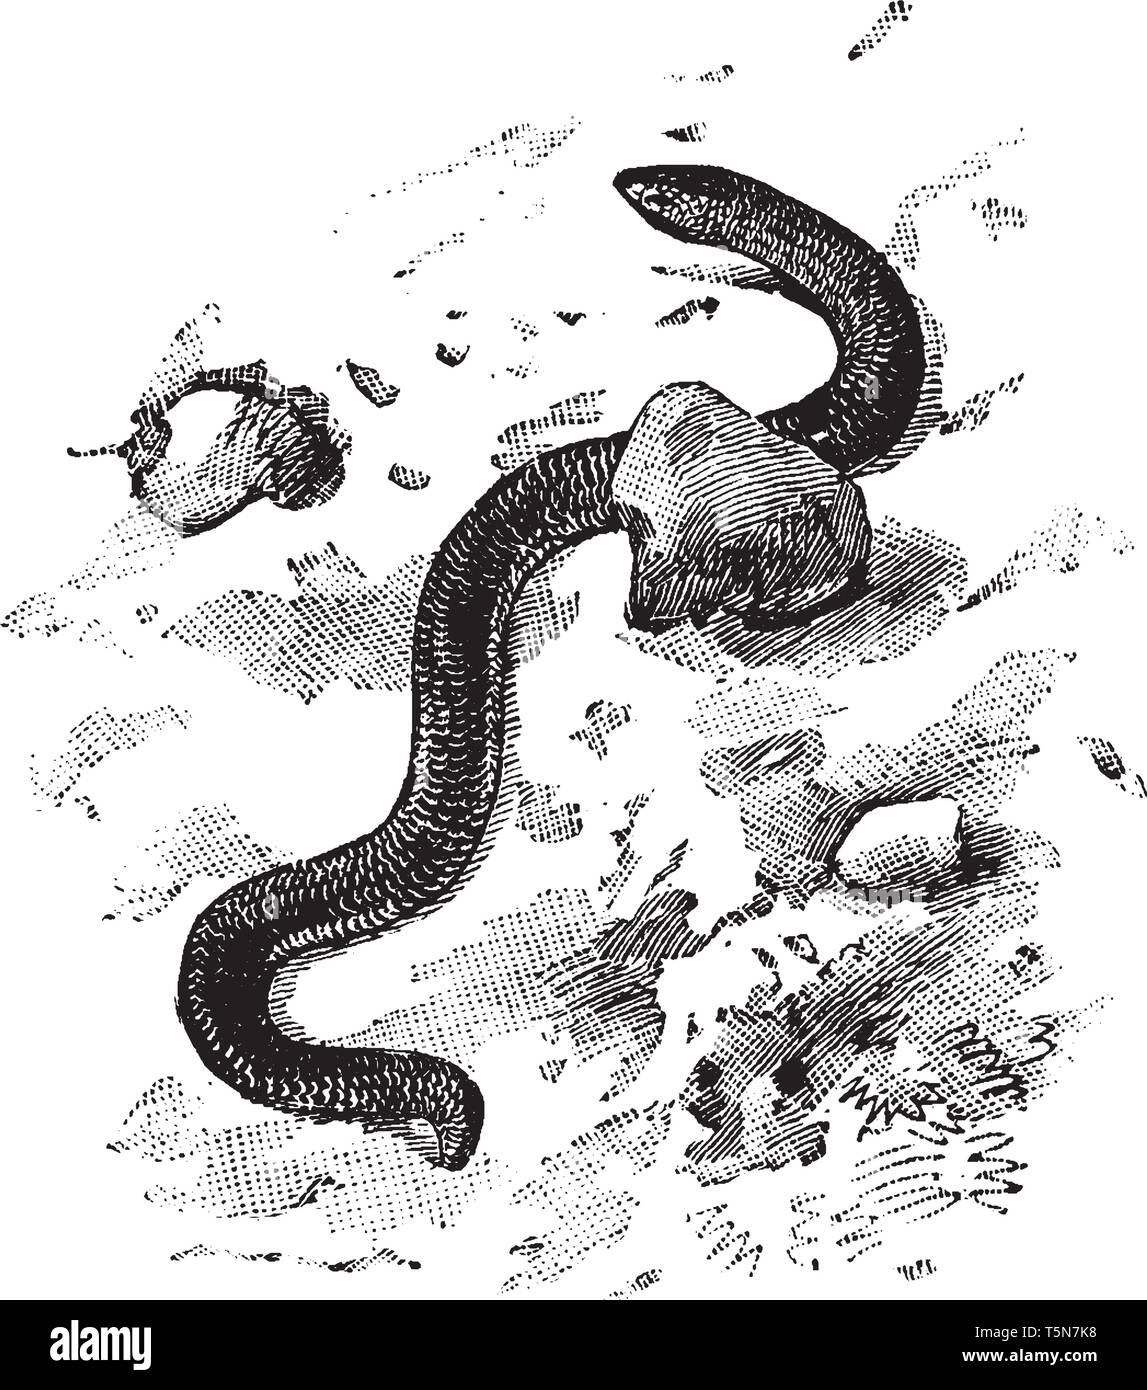 Dart Schlange ist ein Buch, das den Namen der Schlange wie Echsen der Gattung Acontias, vintage Strichzeichnung oder Gravur Abbildung. Stock Vektor